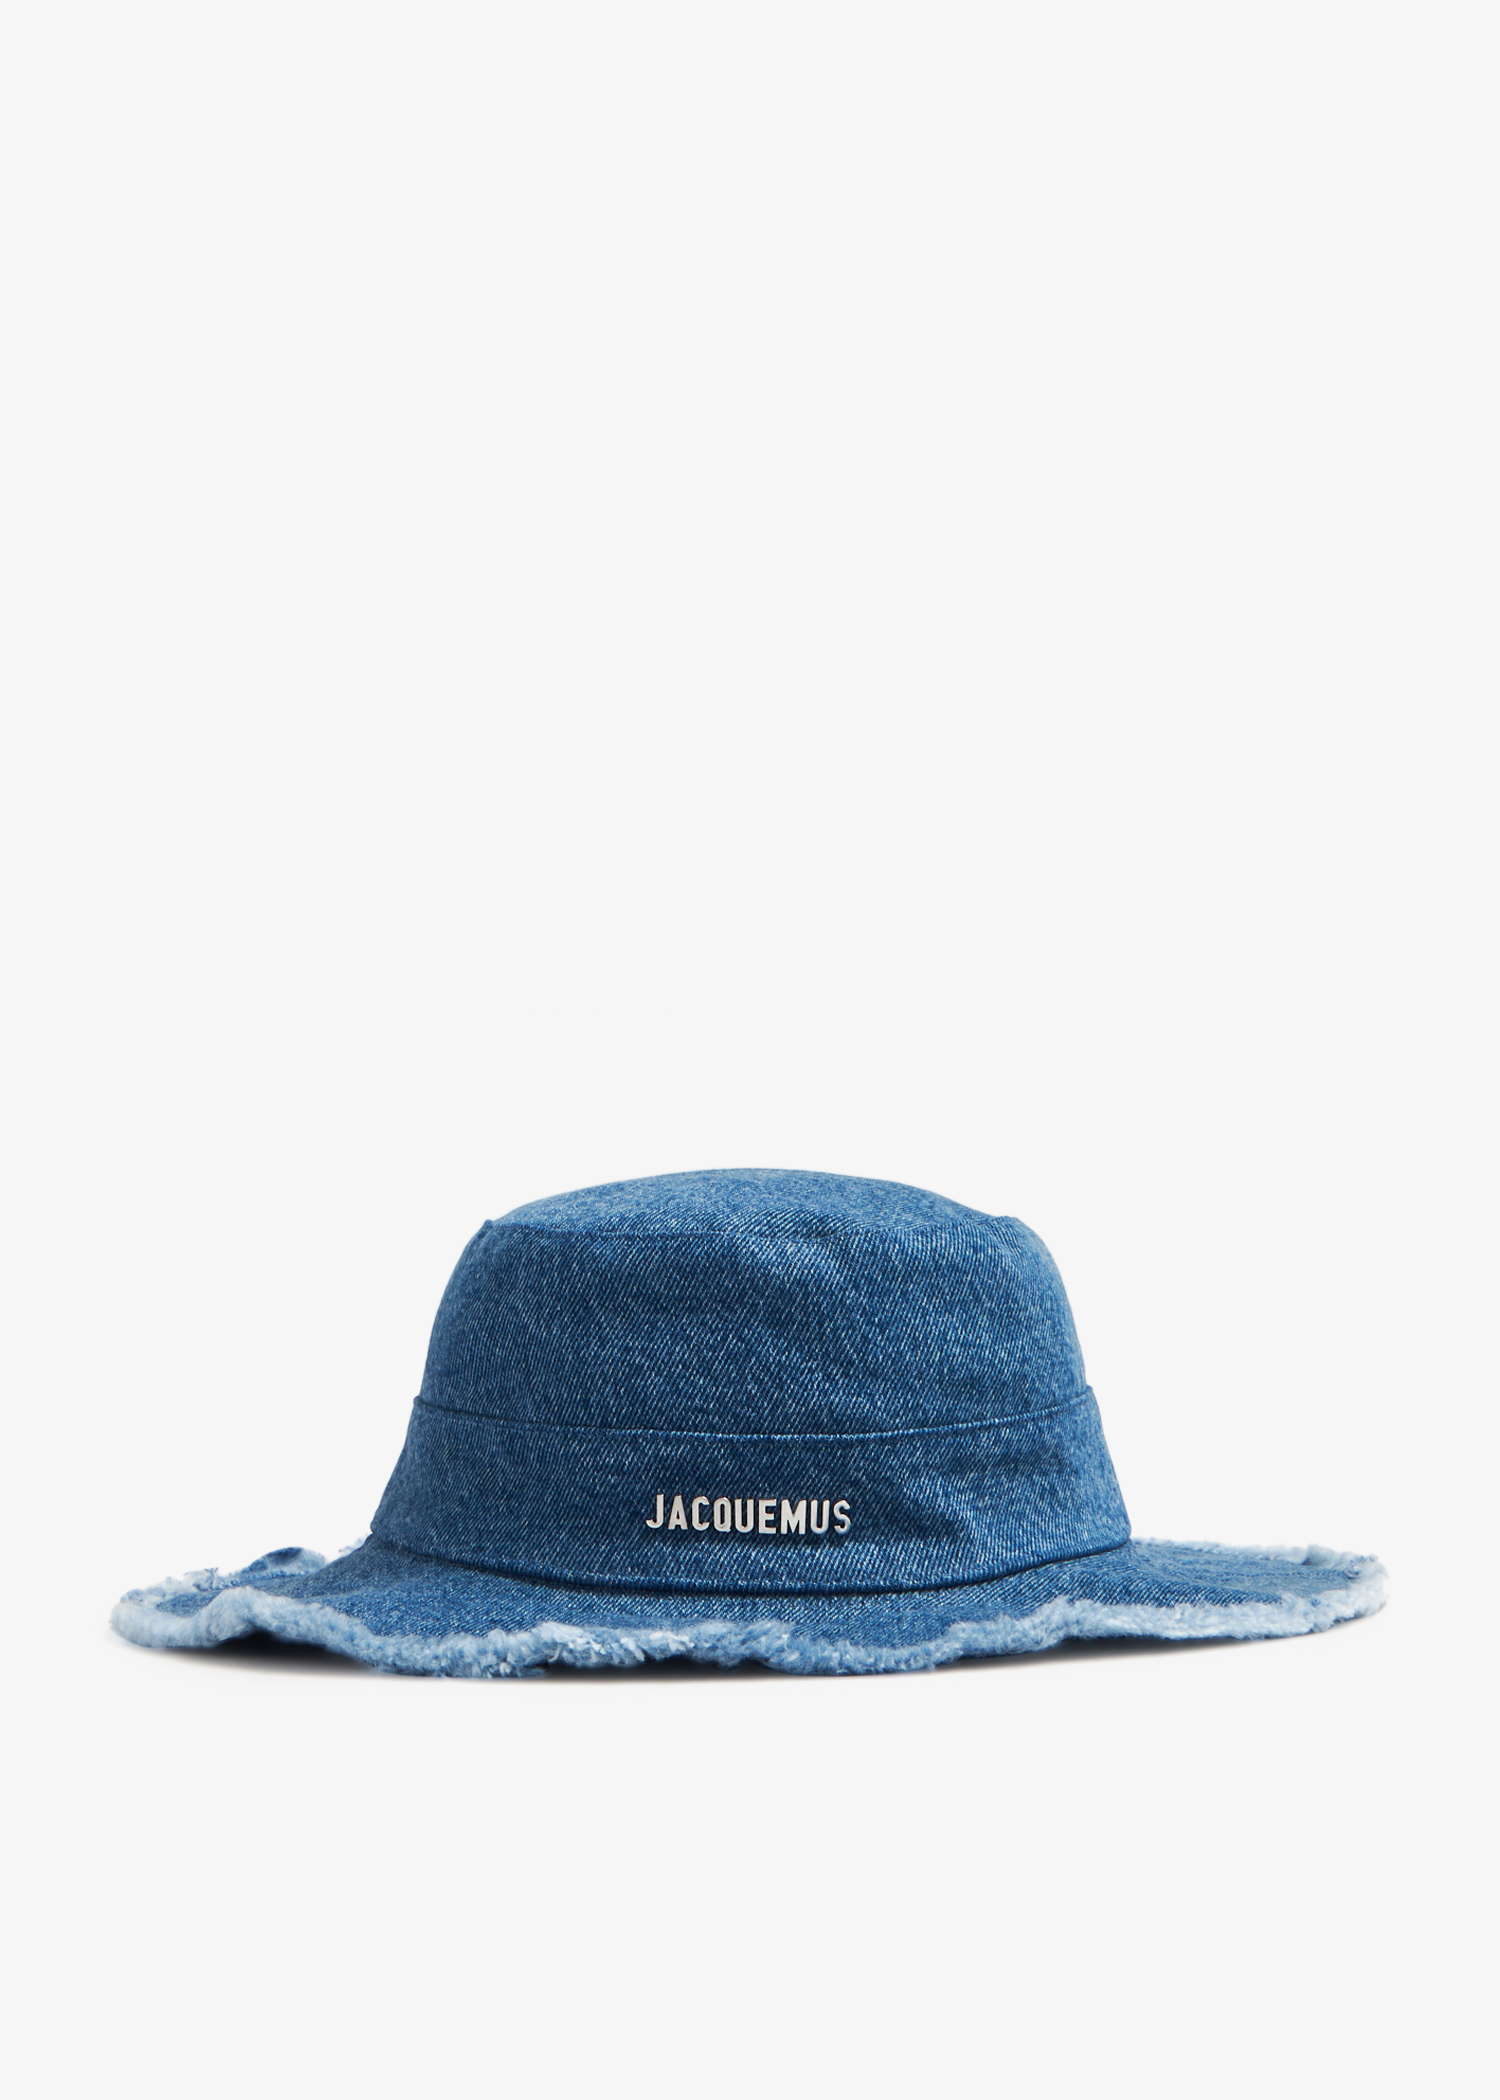 Jacquemus Le Bob Artichaut hat for Women - Blue in UAE | Level Shoes